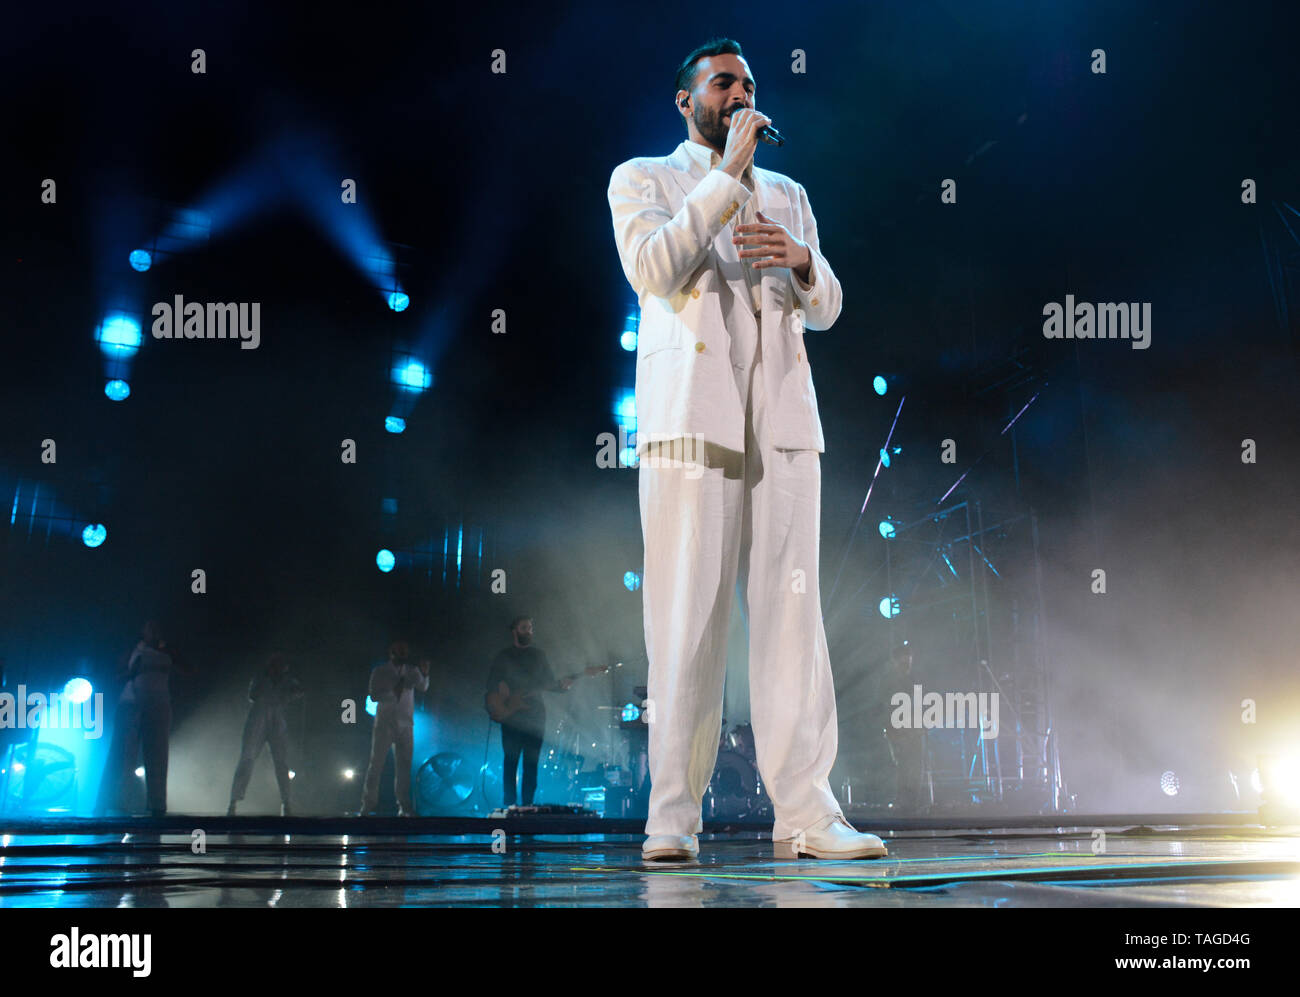 Verona, Italia. 24nd maggio 2019. Il famoso cantautore italiano Marco Mengoni si esibisce in diretta con il suo Atlantico Tour 2019 in Arena di Verona. Foto Stock